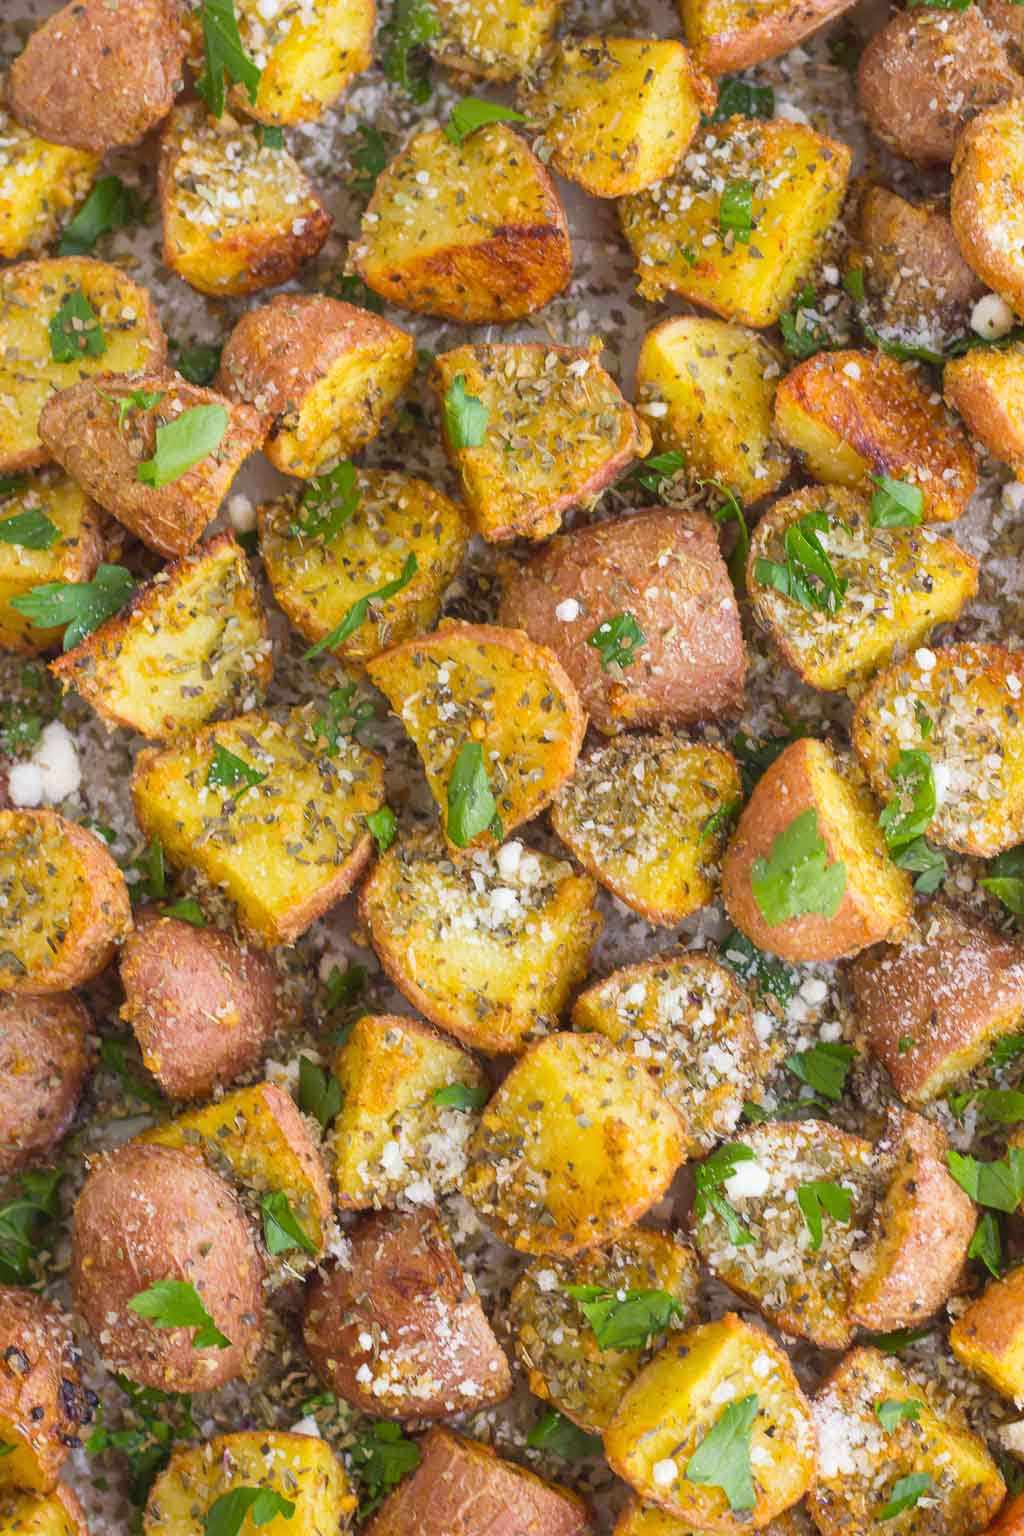 https://www.pumpkinnspice.com/wp-content/uploads/2016/10/herb-roasted-potatoes-1.jpg